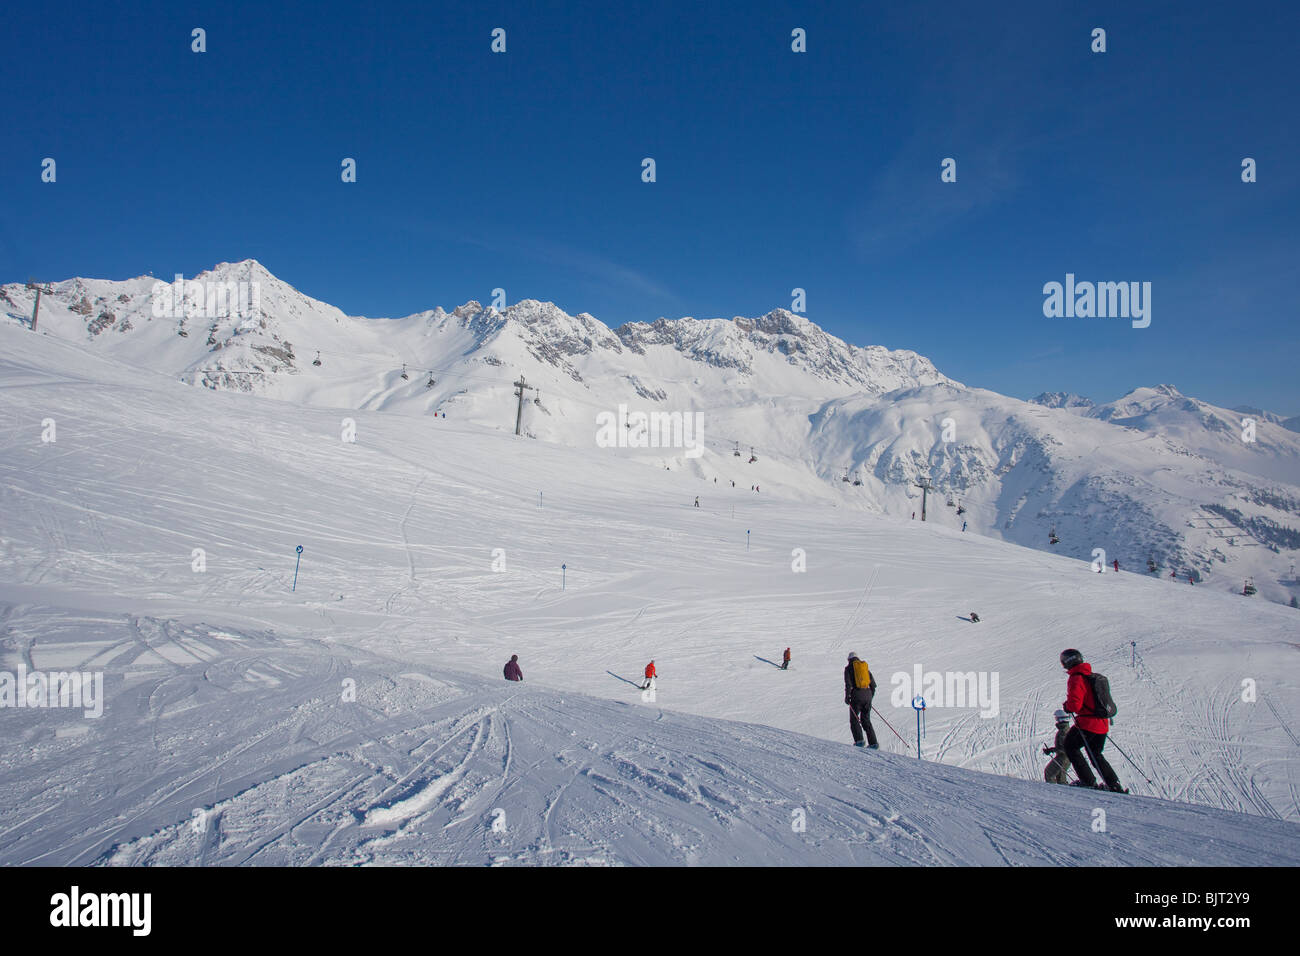 Los esquiadores descender esquiando desde las pistas de esquí de montaña Galzig nieve del invierno San San San Anton am Arlberg Alpes Austriacos Austria Europa montañas Foto de stock